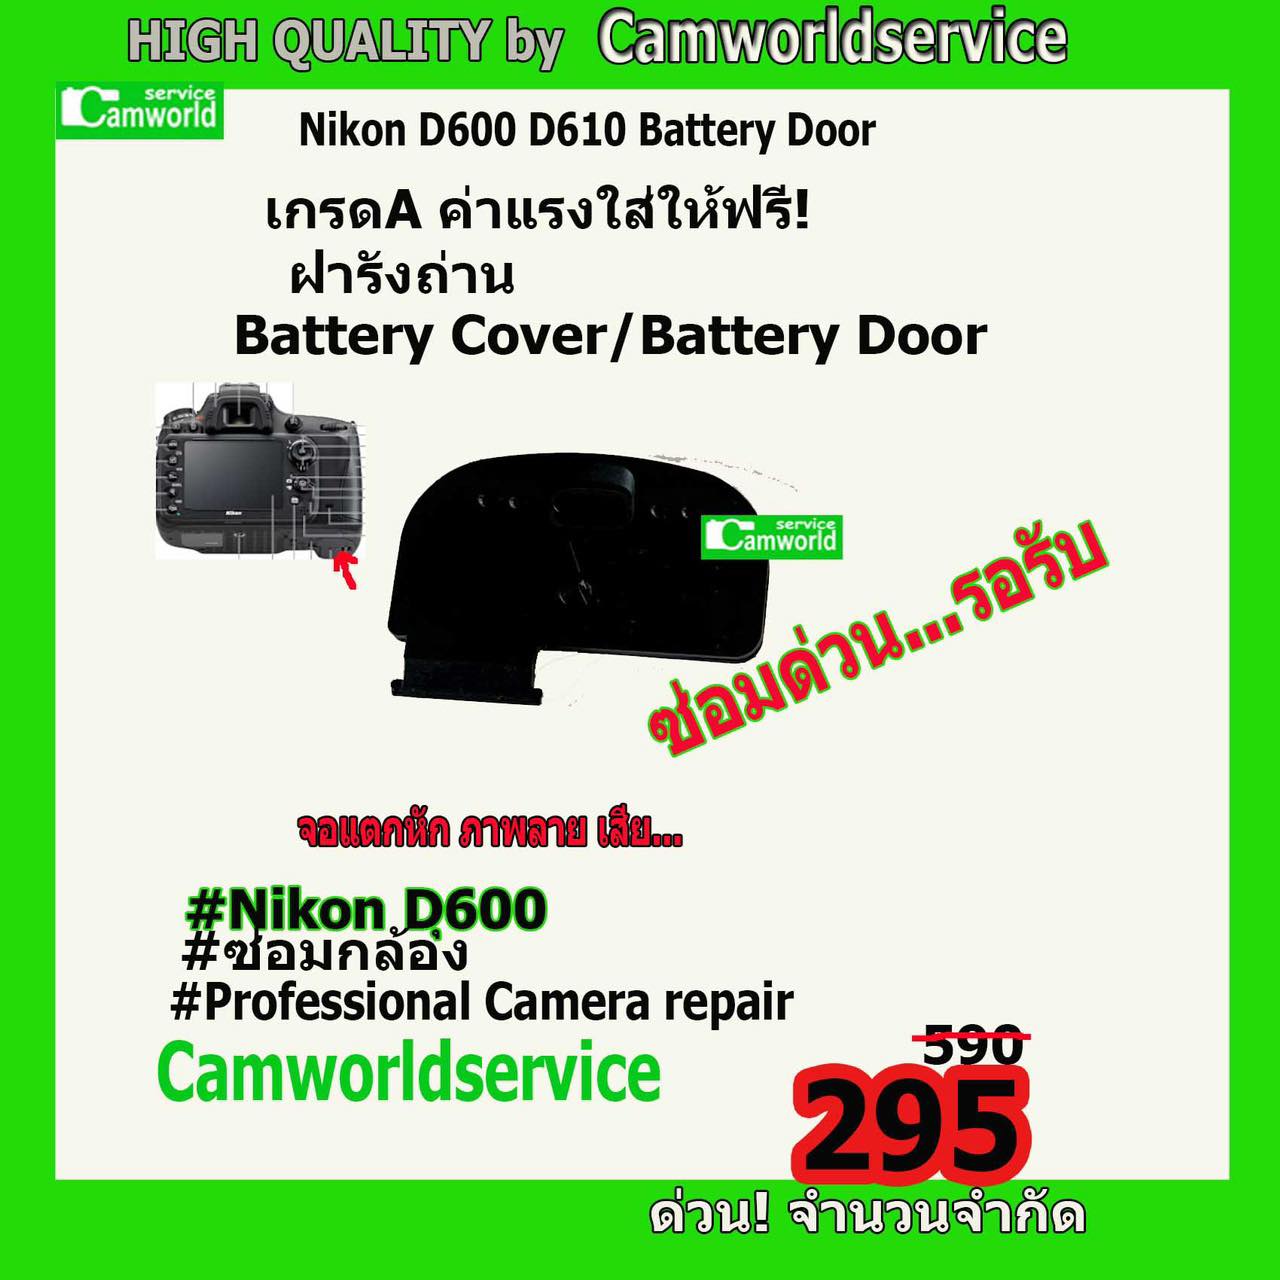 ฝารังถ่าน Battery Cover/Battery Door for Nikon D600 D610  เกรด A คุณภาพเชื่อถือได้ วัสดุอย่างดี ค่าแรงใส่ให้ฟรี!